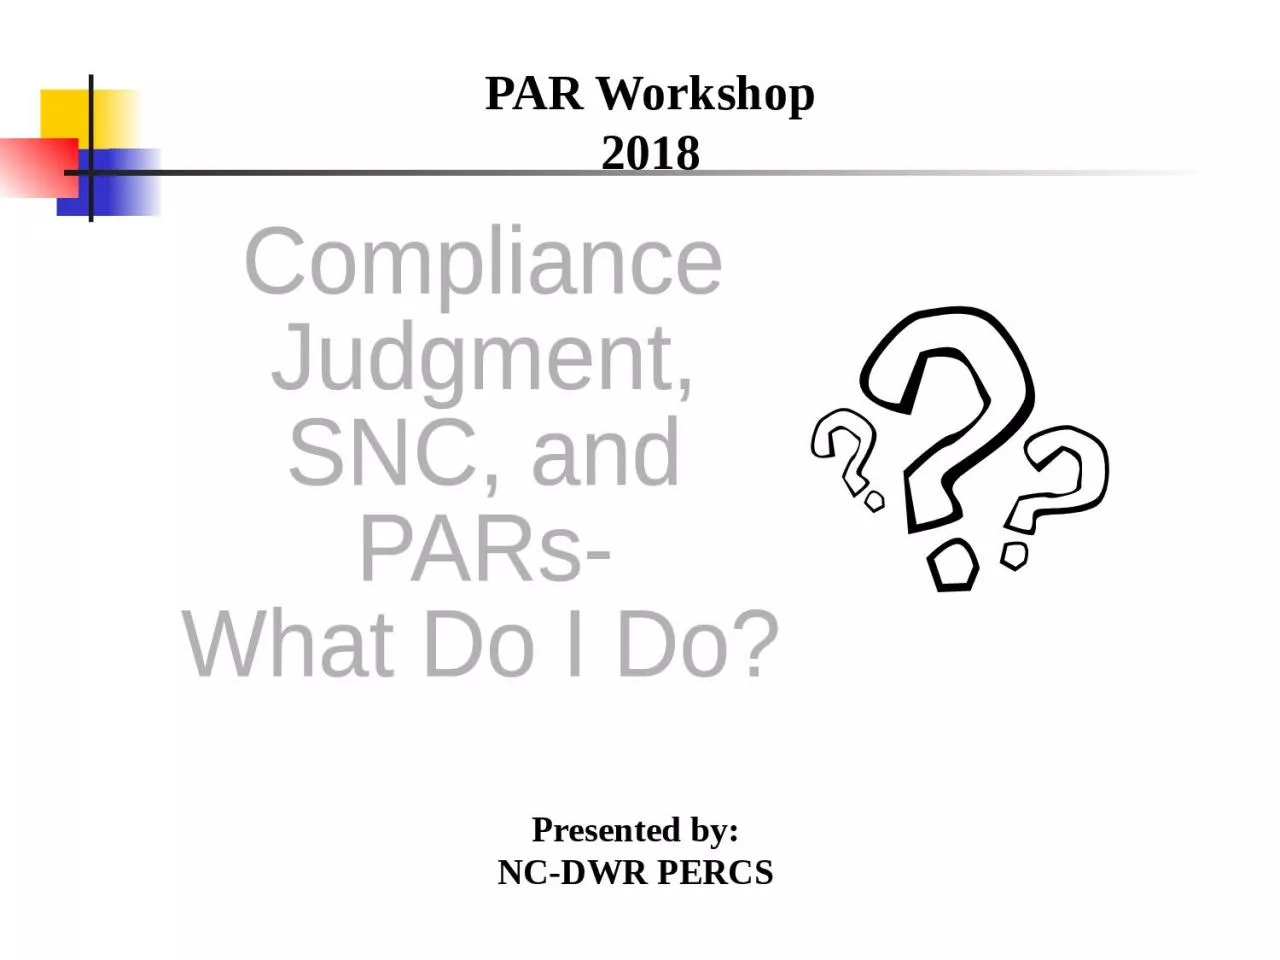 PAR Workshop 2018 Compliance